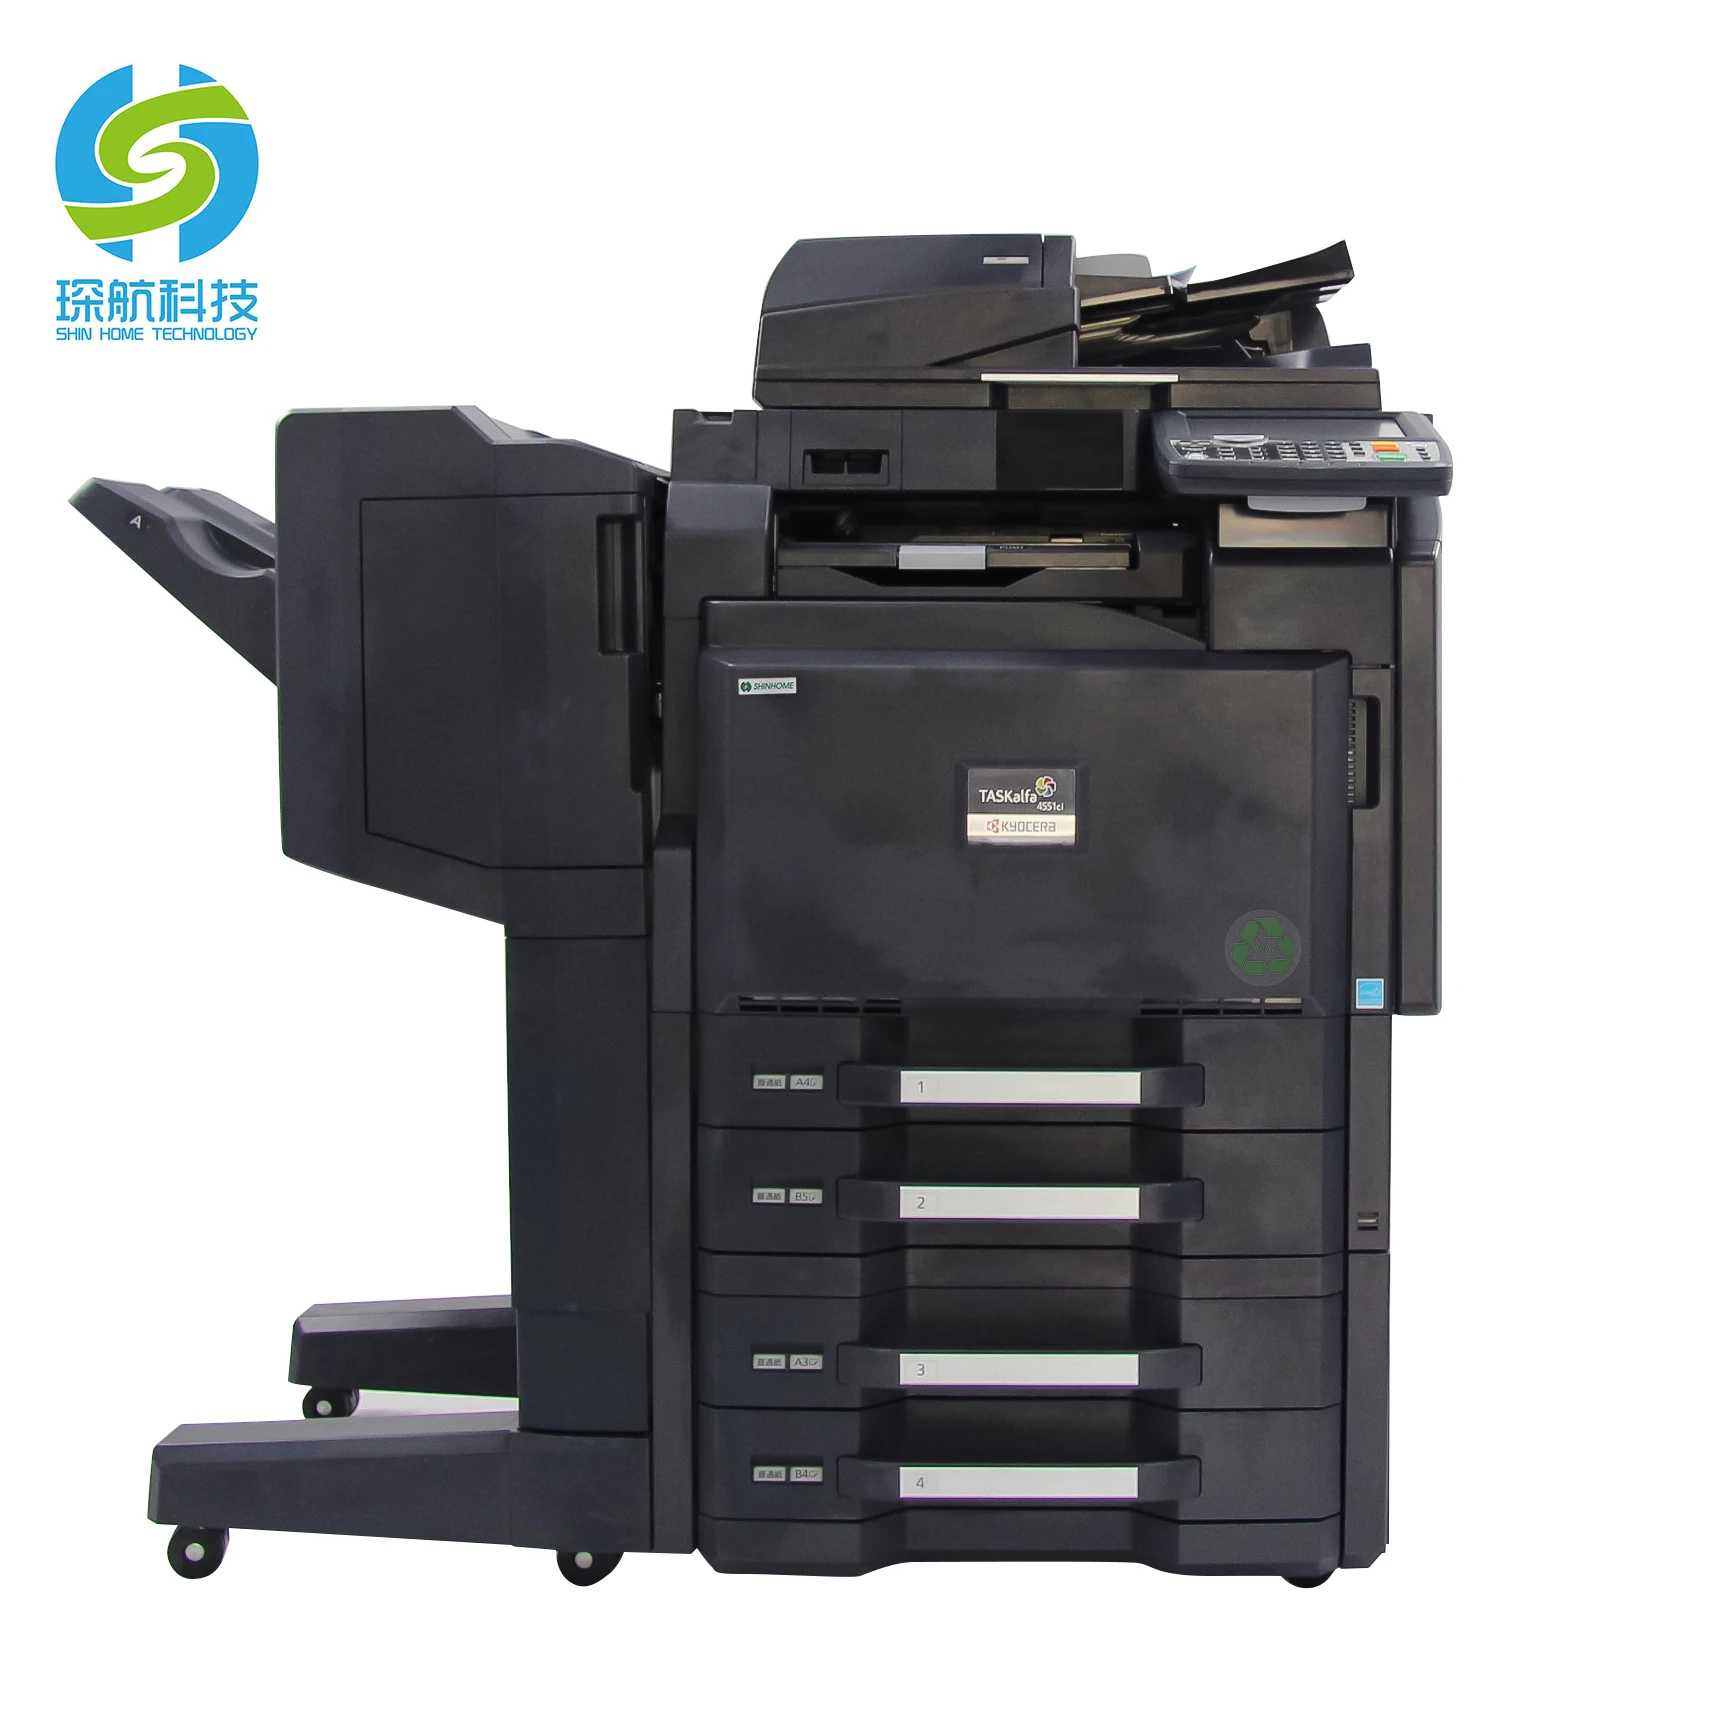 Source 京セラ使用するコピー機印刷機用のコピー機4551ciオールインワンプリンタ機 on